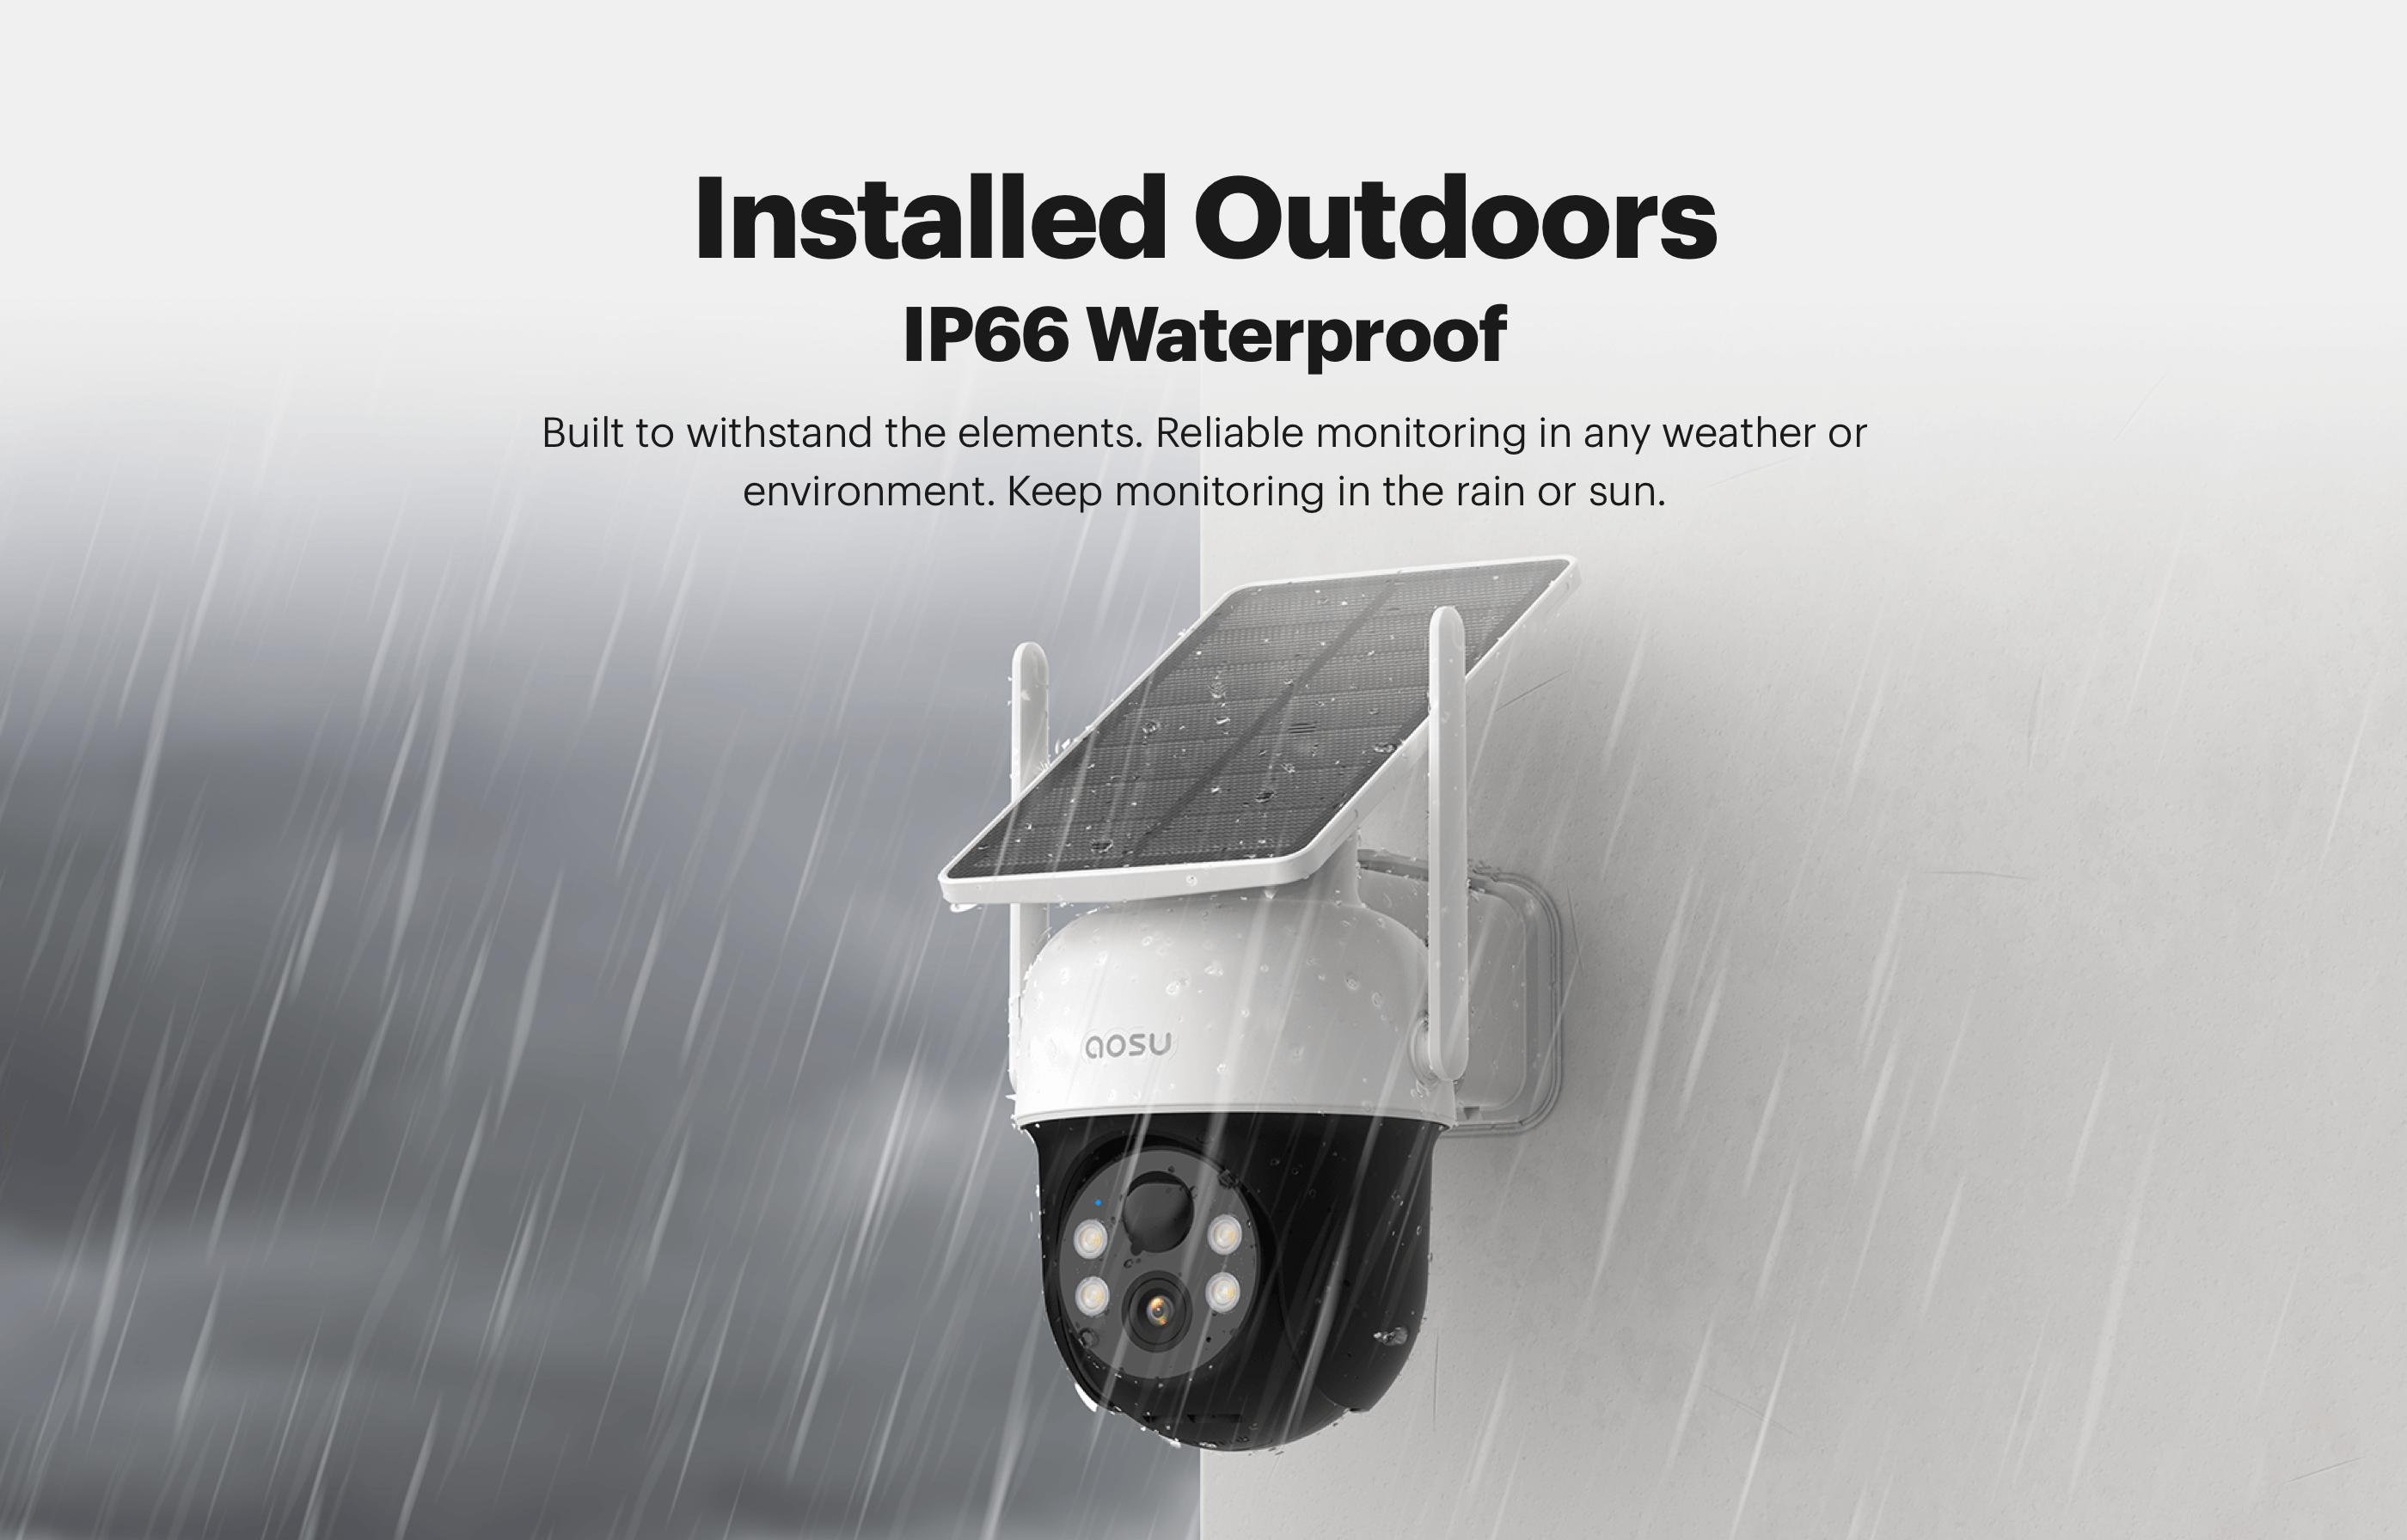 IP66 waterproof, suitable for outdoor installation